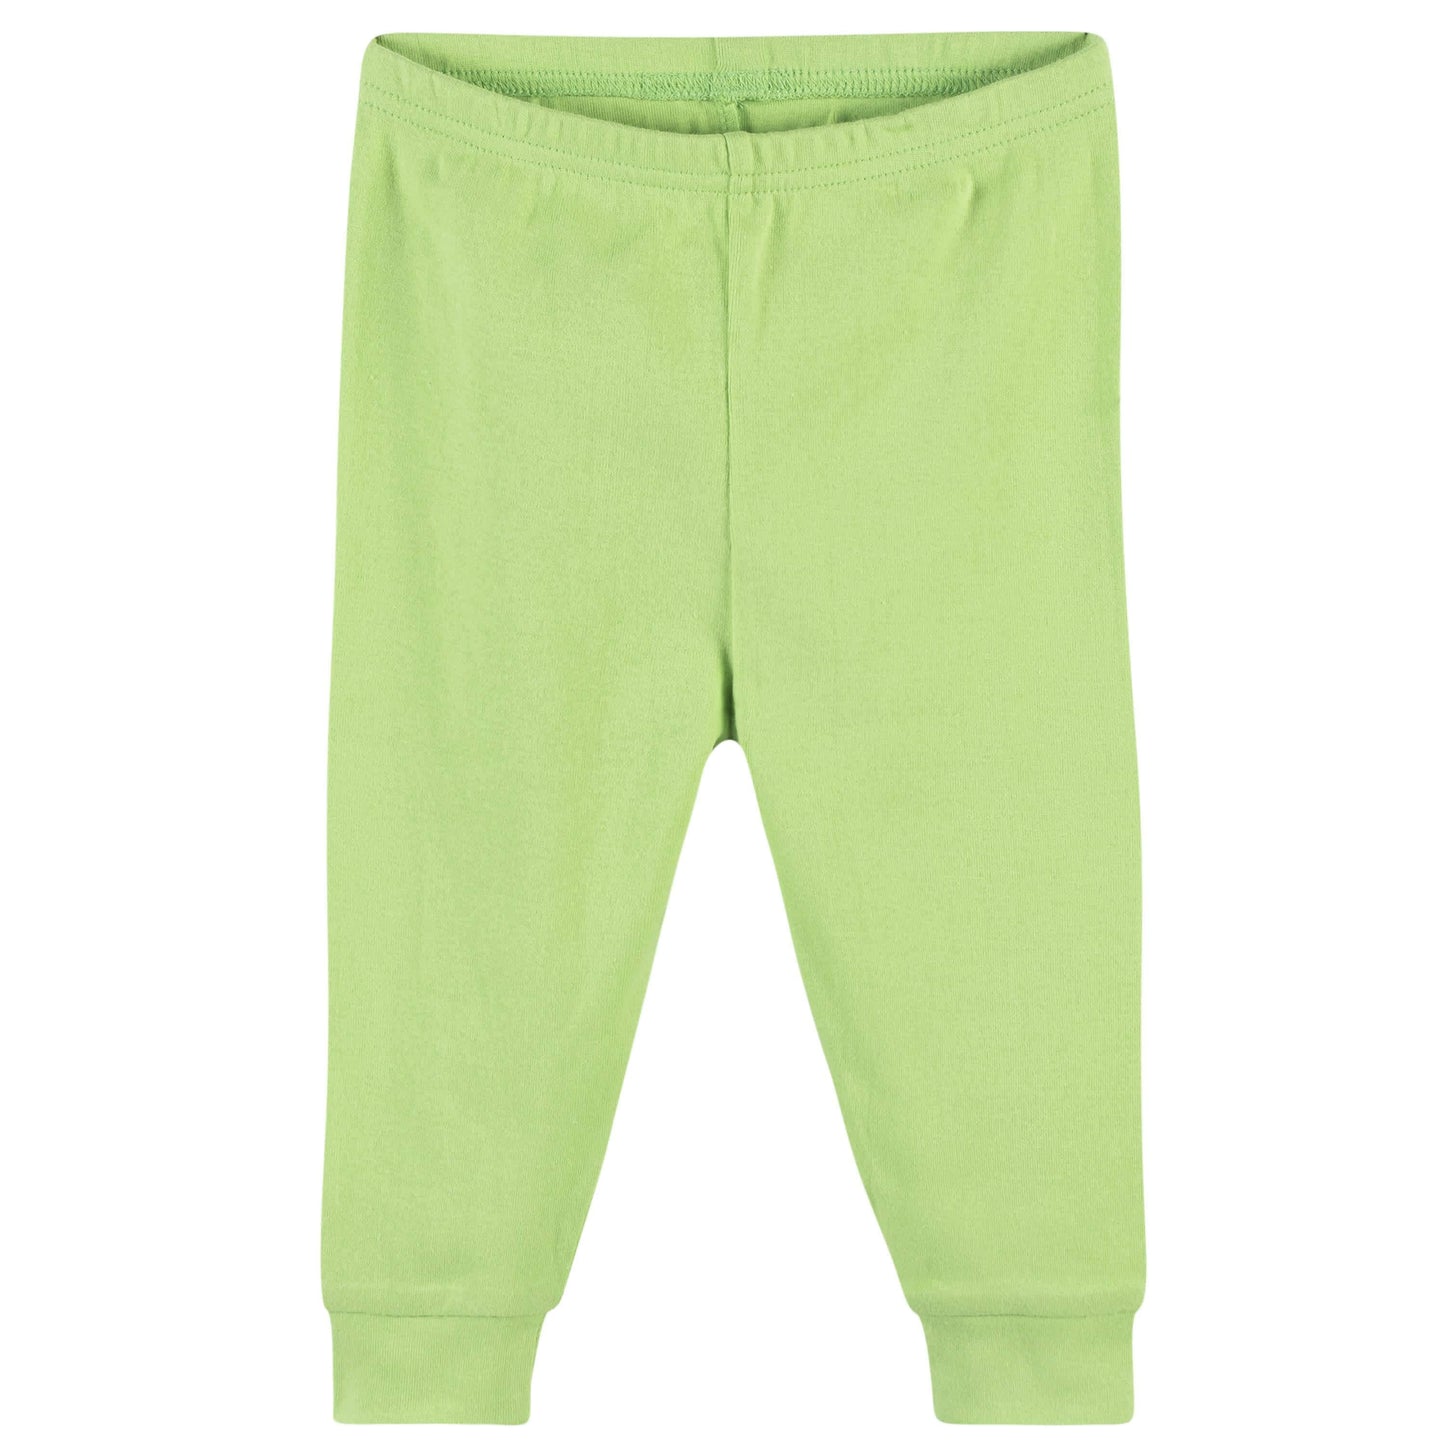 4-Piece Baby & Toddler Pink Avocado Snug Fit Cotton Pajamas